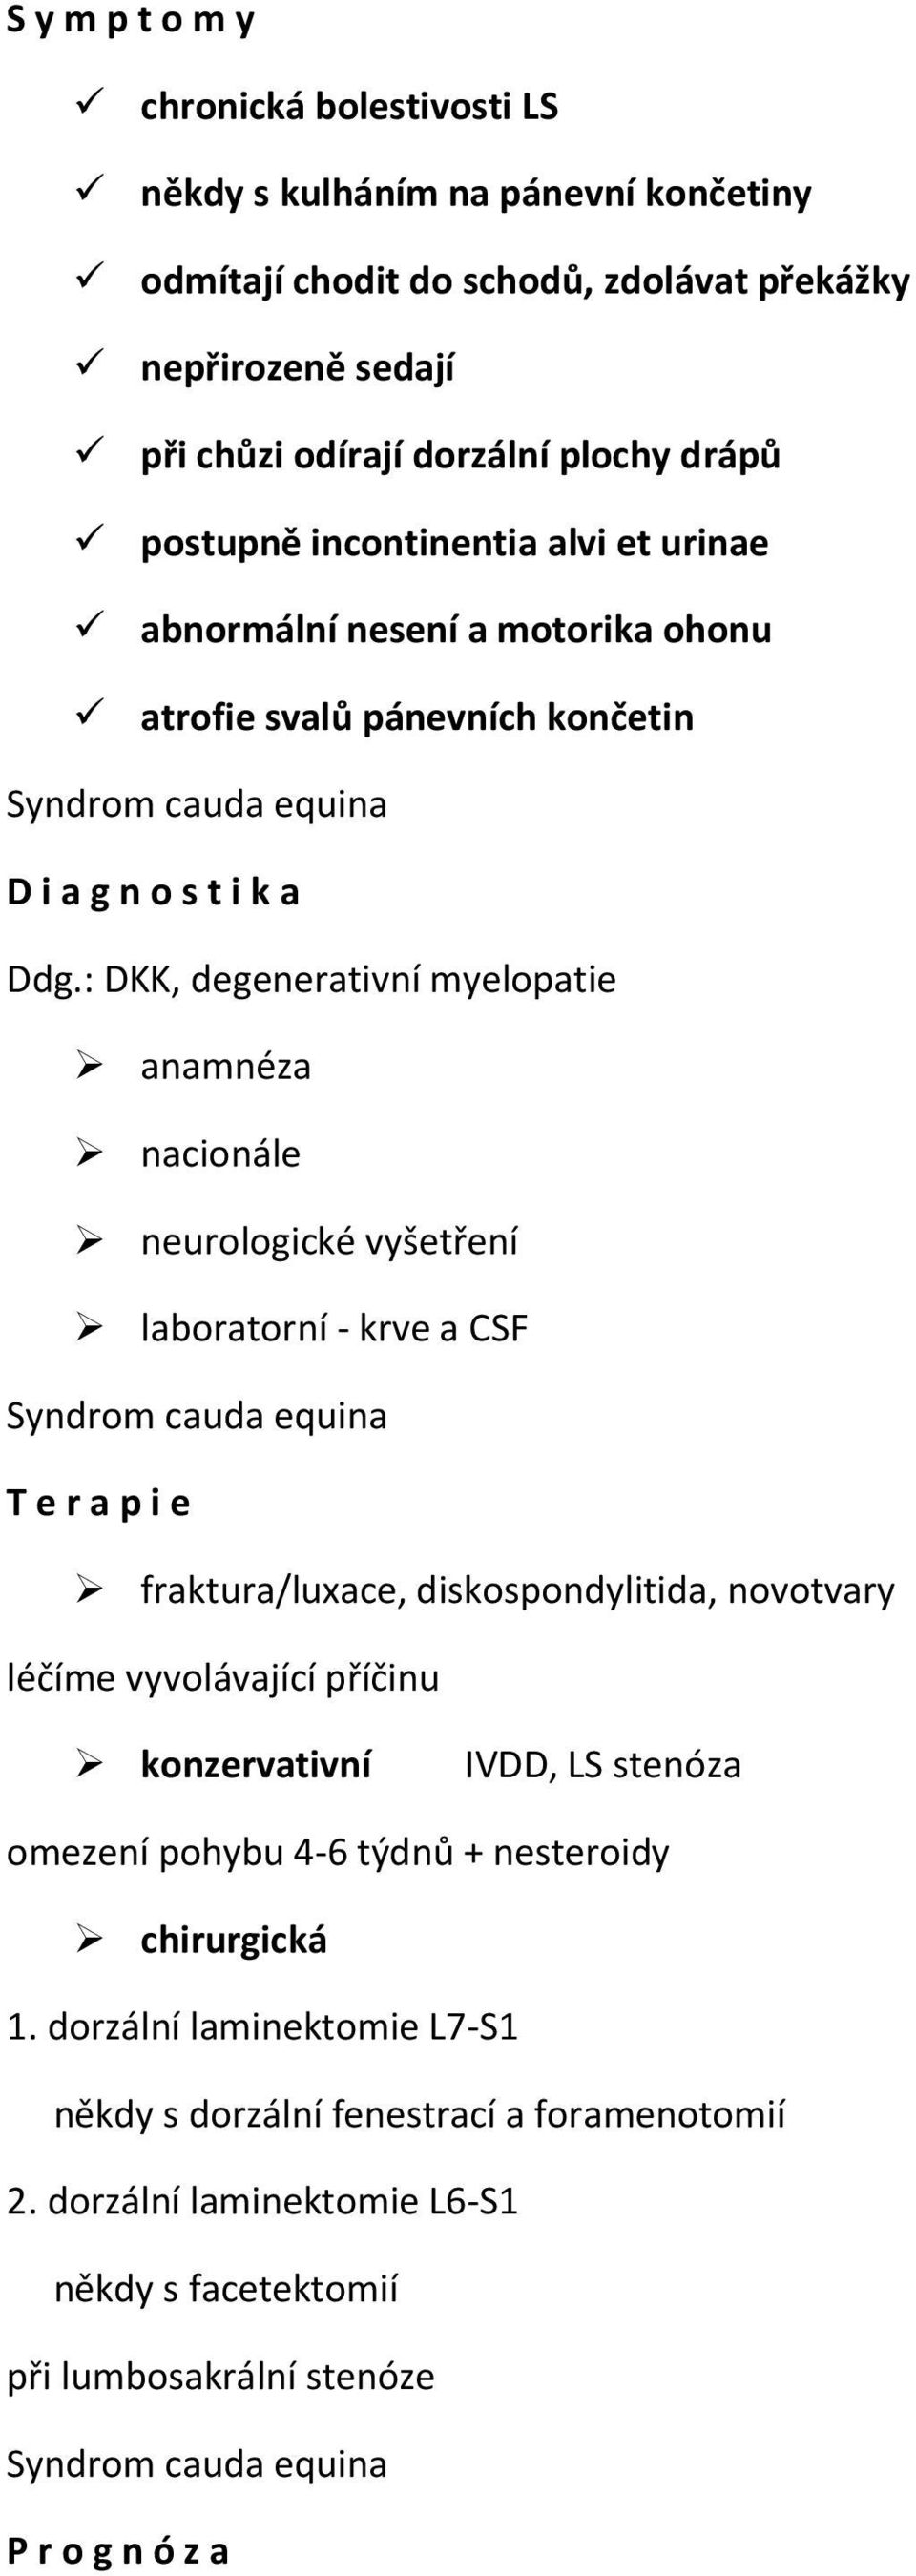 : DKK, degenerativní myelopatie anamnéza nacionále neurologické vyšetření laboratorní - krve a CSF Syndrom cauda equina T e r a p i e fraktura/luxace, diskospondylitida, novotvary léčíme vyvolávající